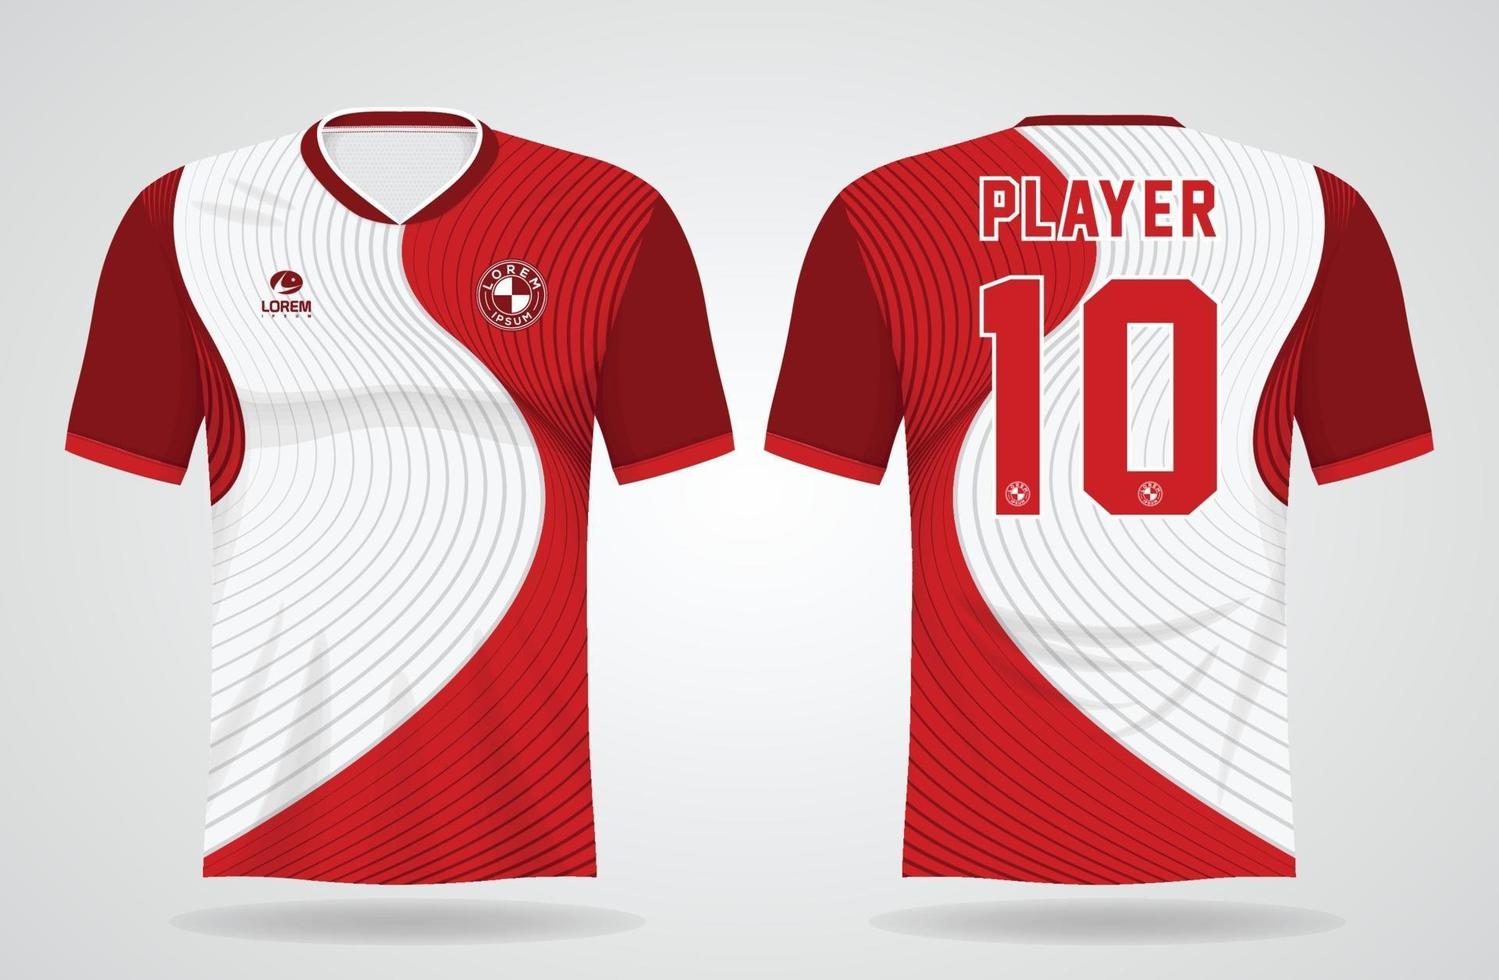 de camiseta deportiva blanca roja para uniformes de equipo y diseño de camiseta de fútbol 2436258 en Vecteezy